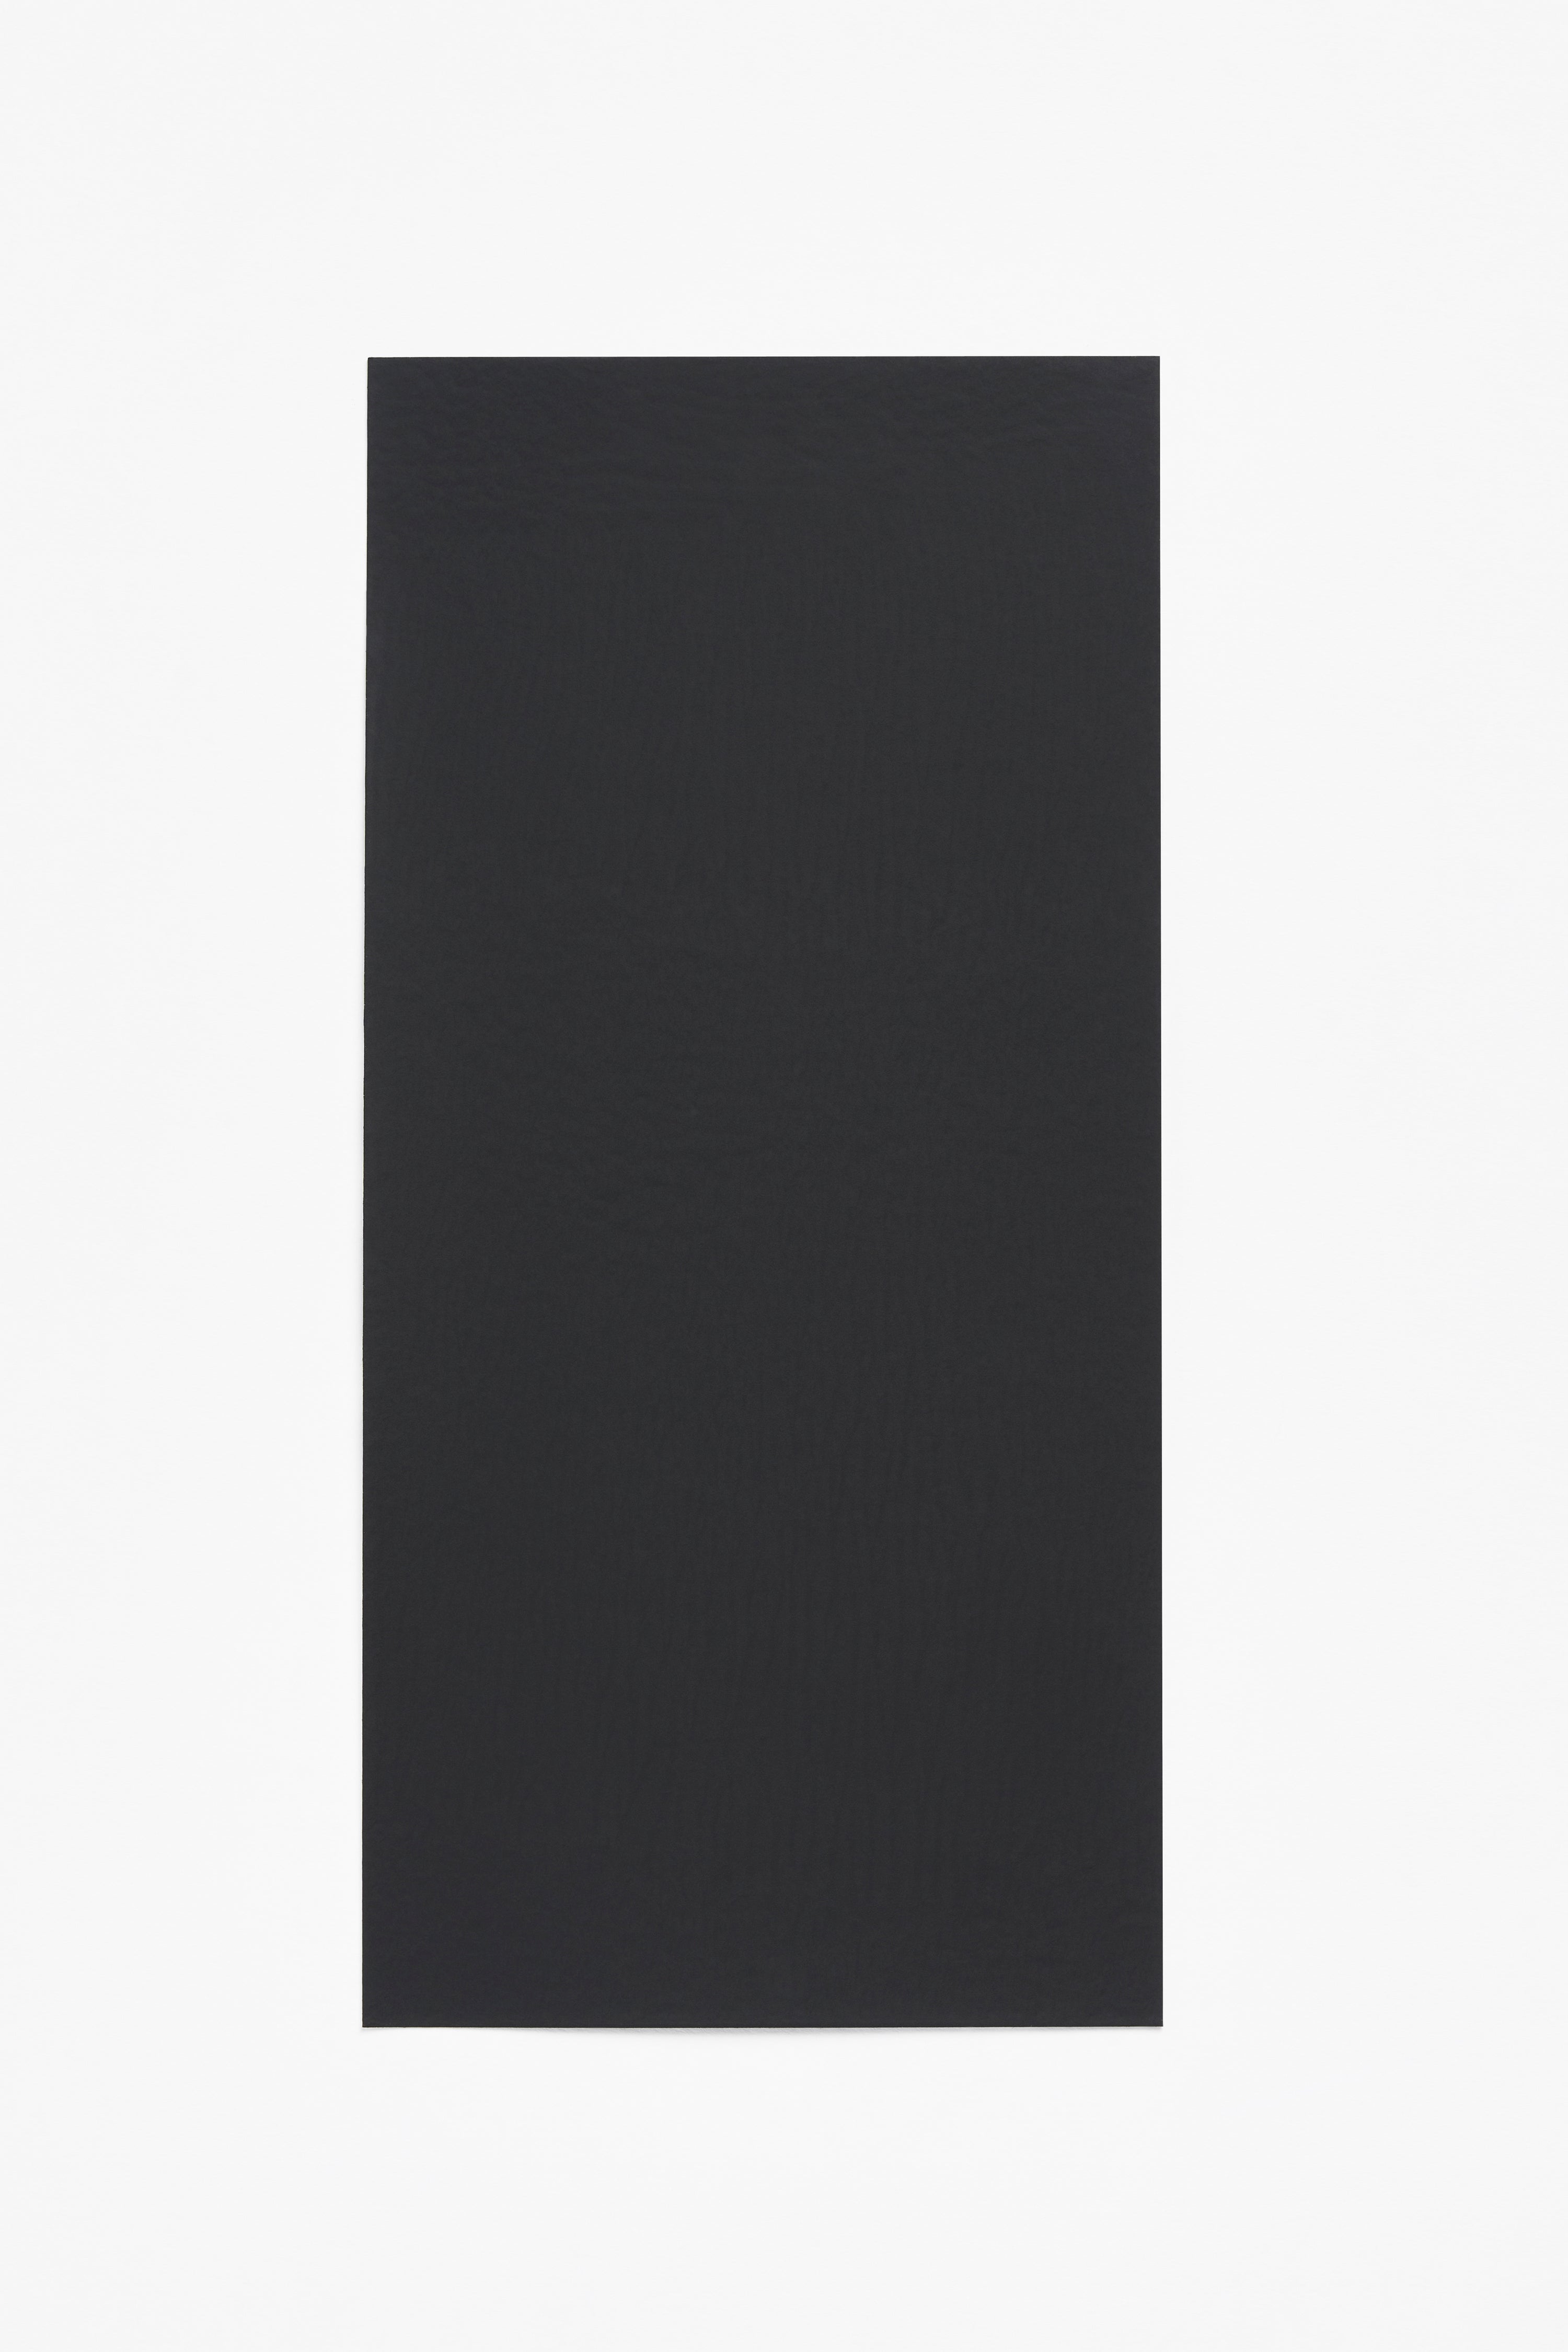 Black — a paint colour developed by Muller Van Severen for Blēo